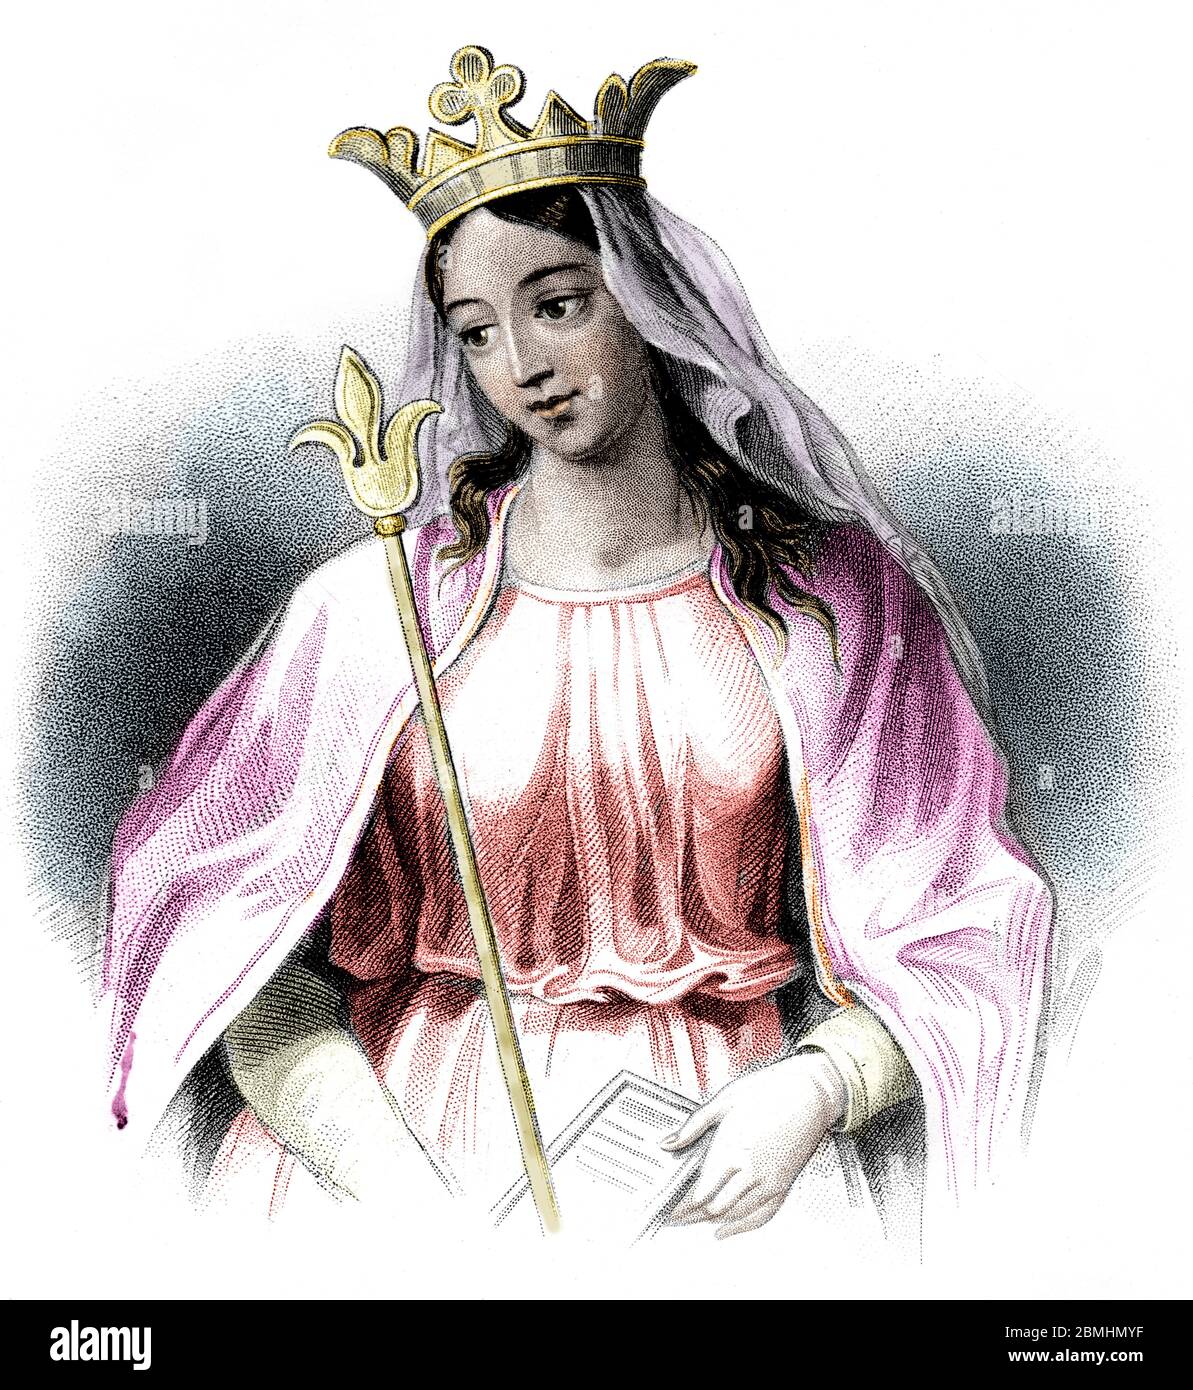 "Ritratto de la reine Mathilde de Flandres (1031-1083) Epiuse de Guillaume le Conquerant" (Ritratto della regina Matilda (Mathilda) delle Fiandre moglie di Wi Foto Stock